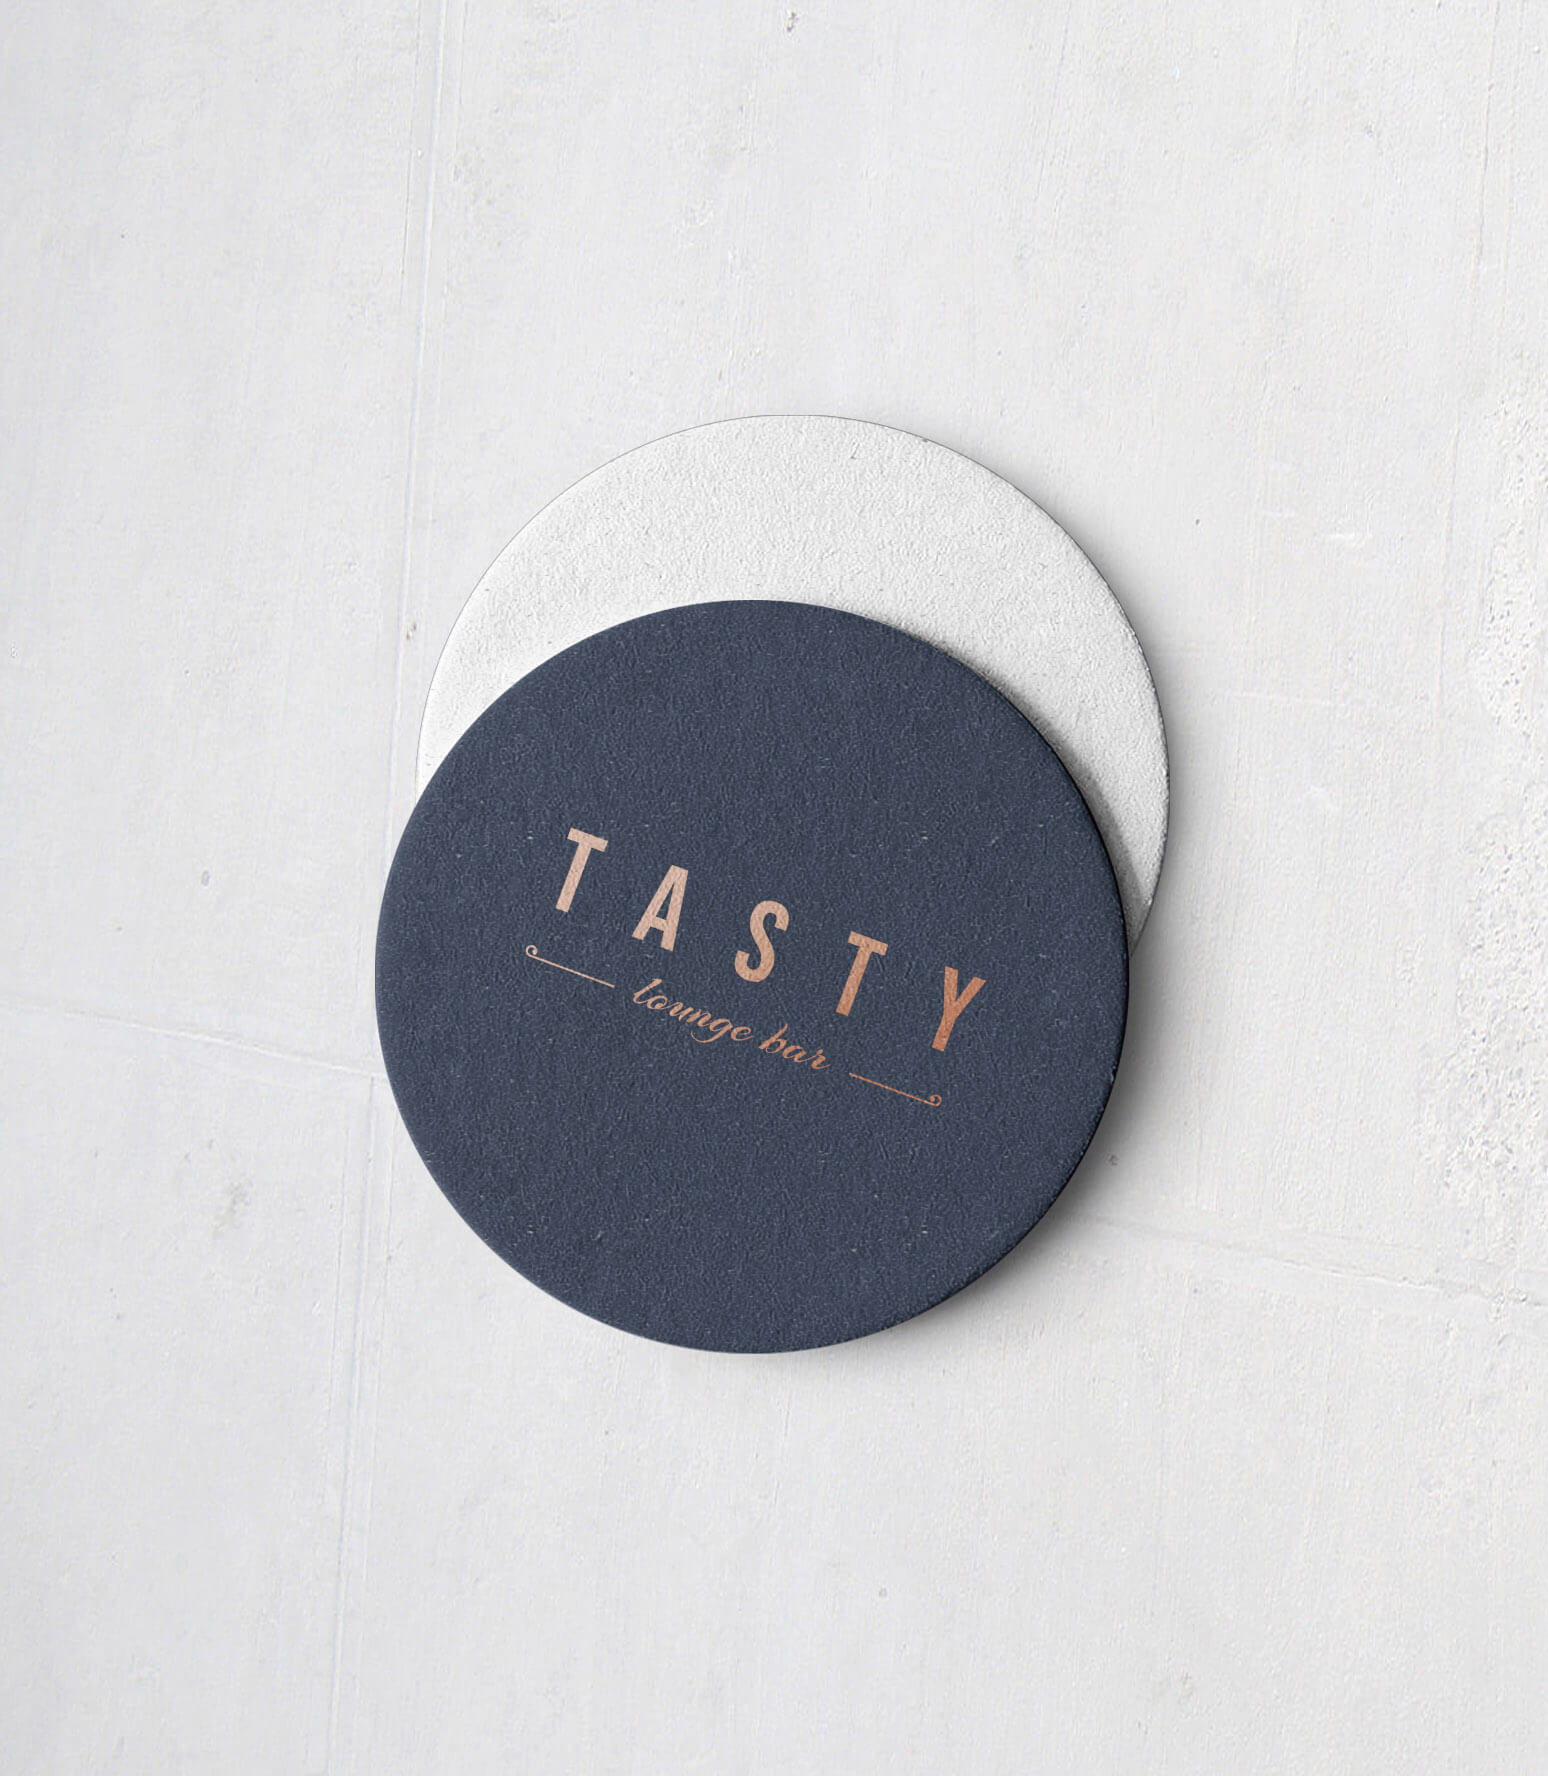 Tasty Lounge Bar酒吧品牌视觉设计